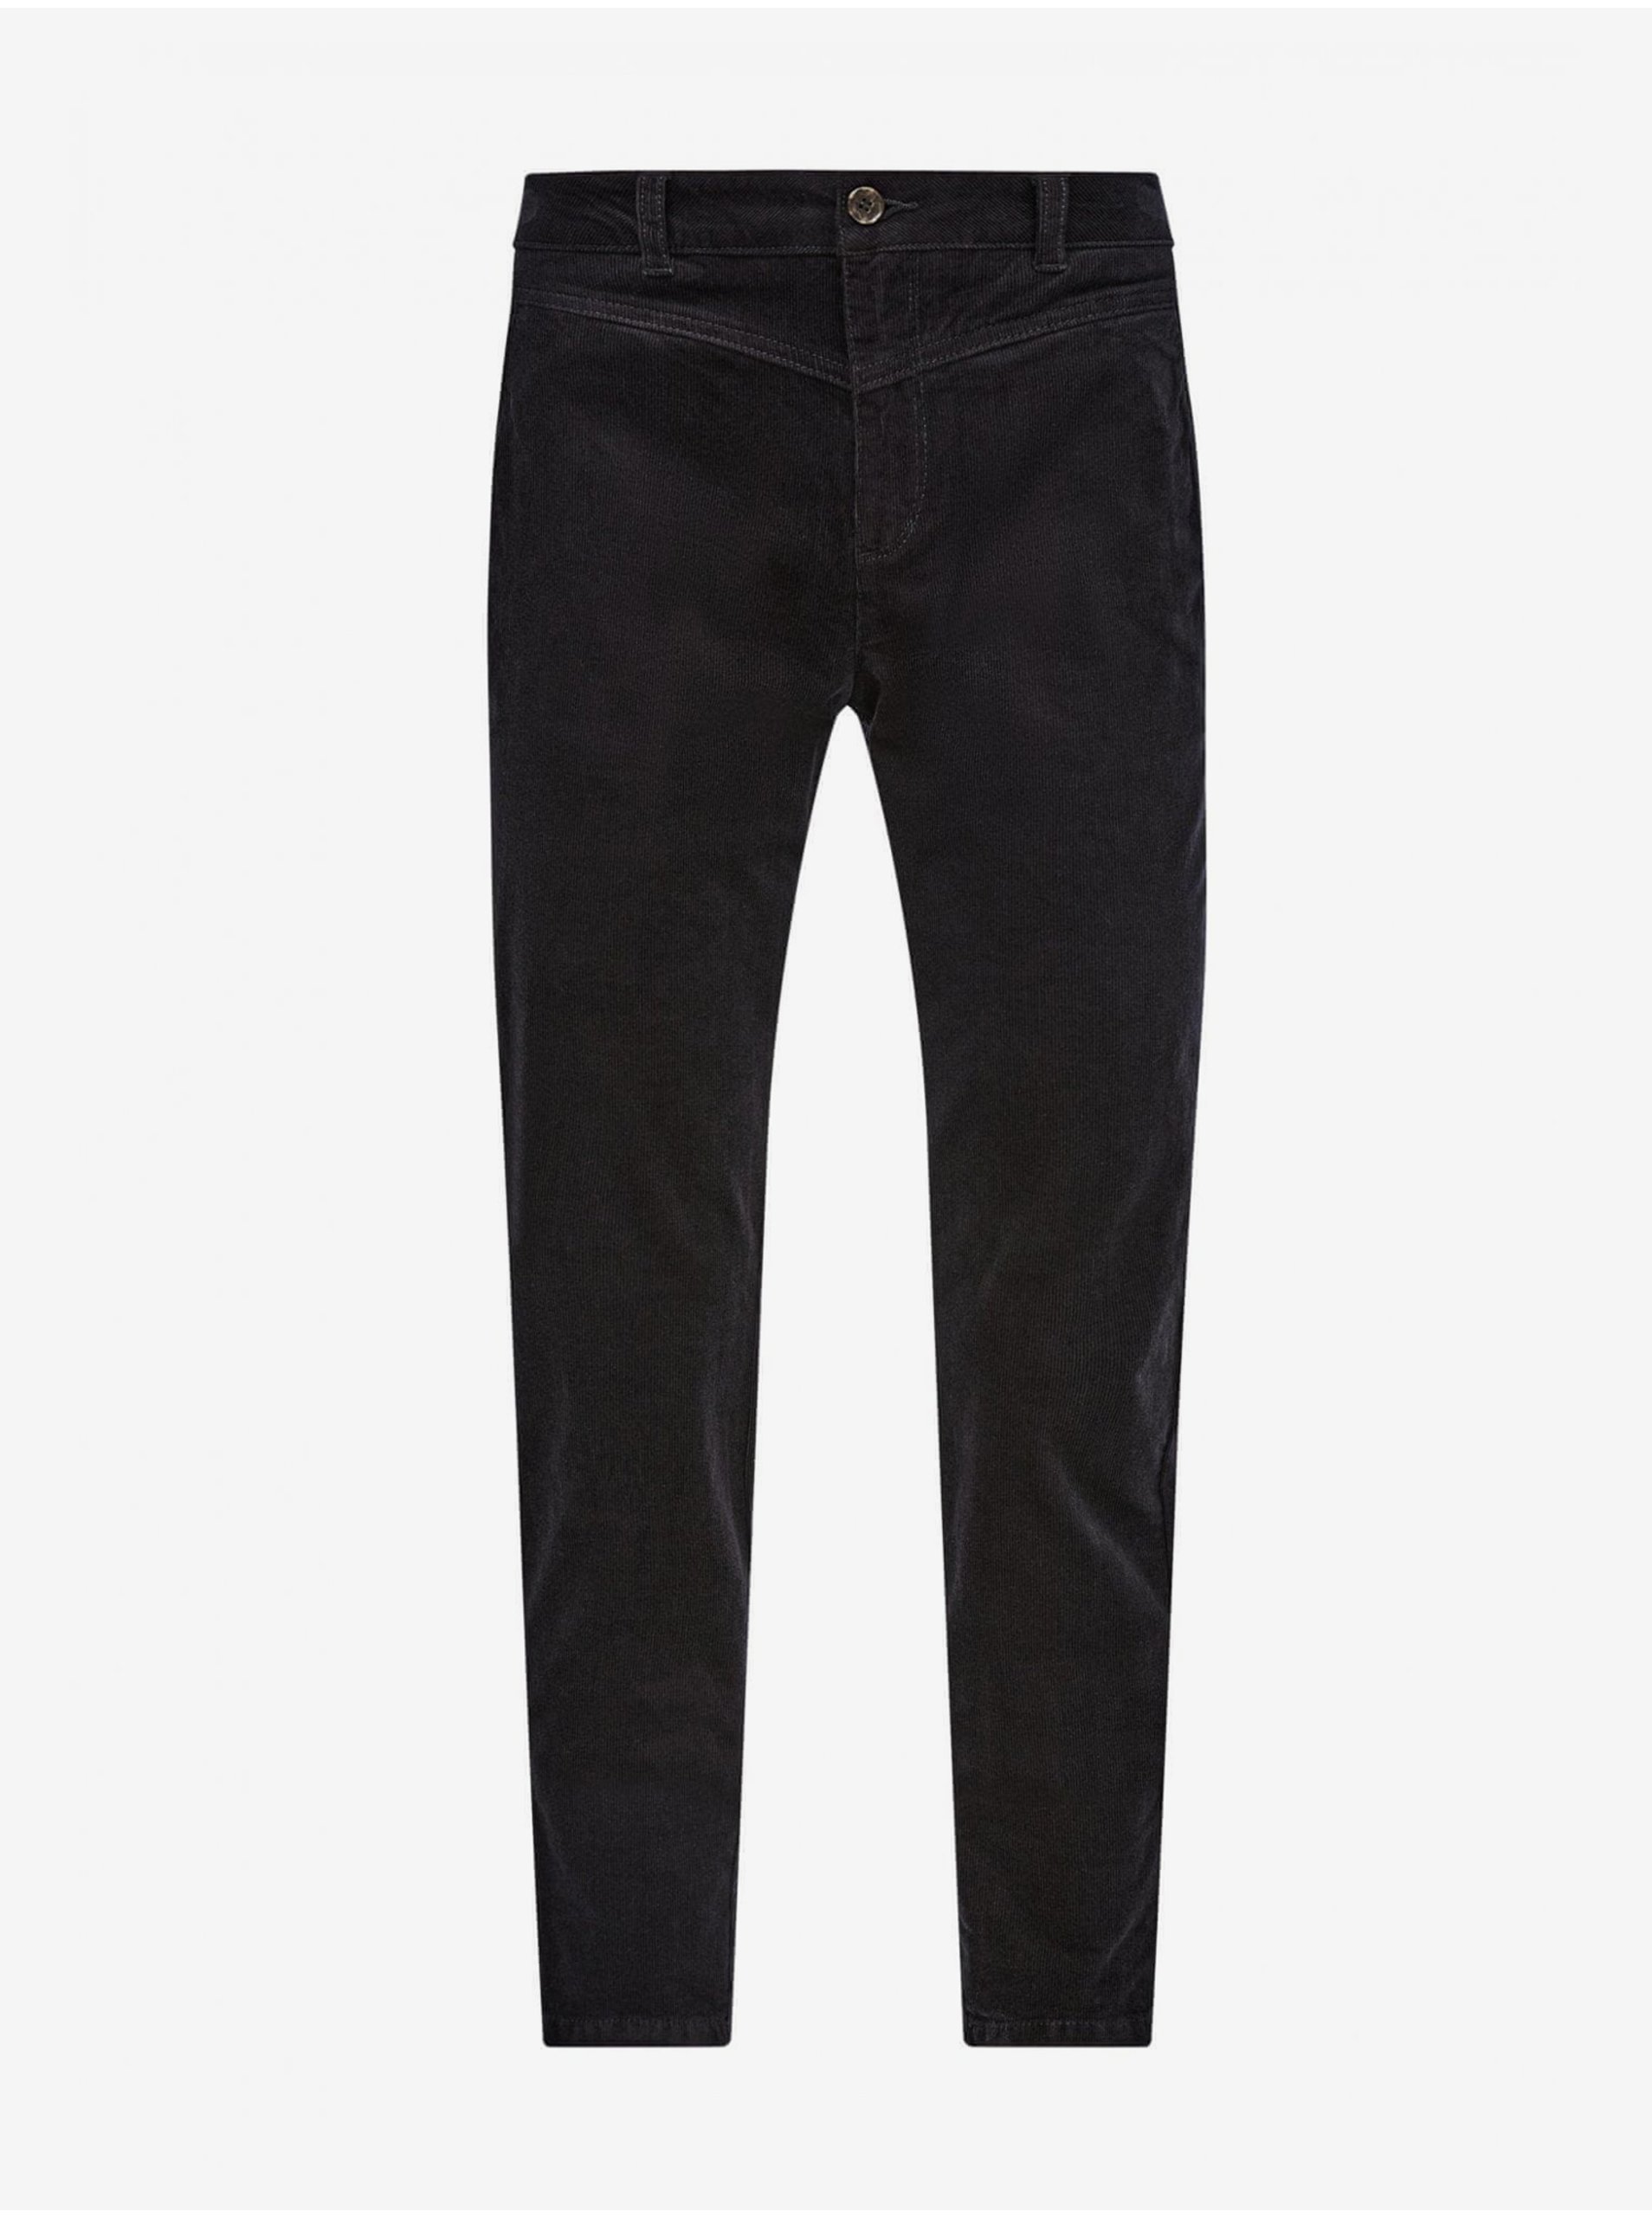 E-shop Čierne dámske menčestrové nohavice s.Oliver